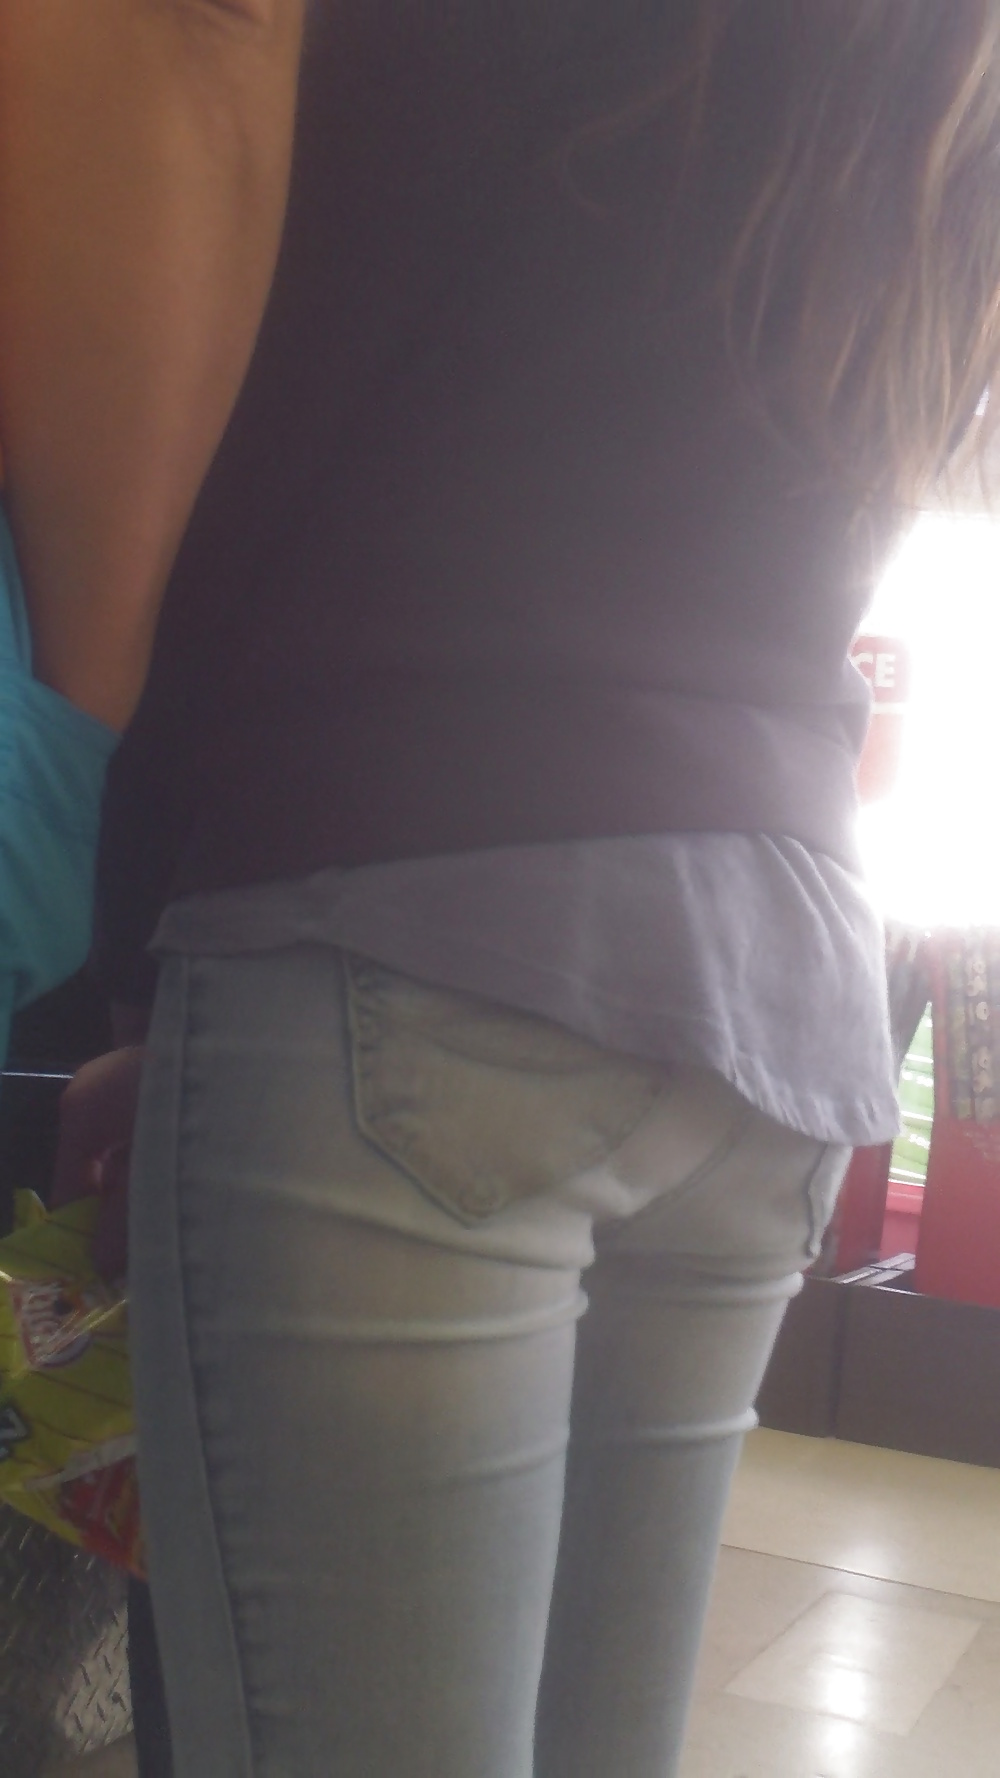 Popular teen girls ass & butt in jeans Part 7 #39943068